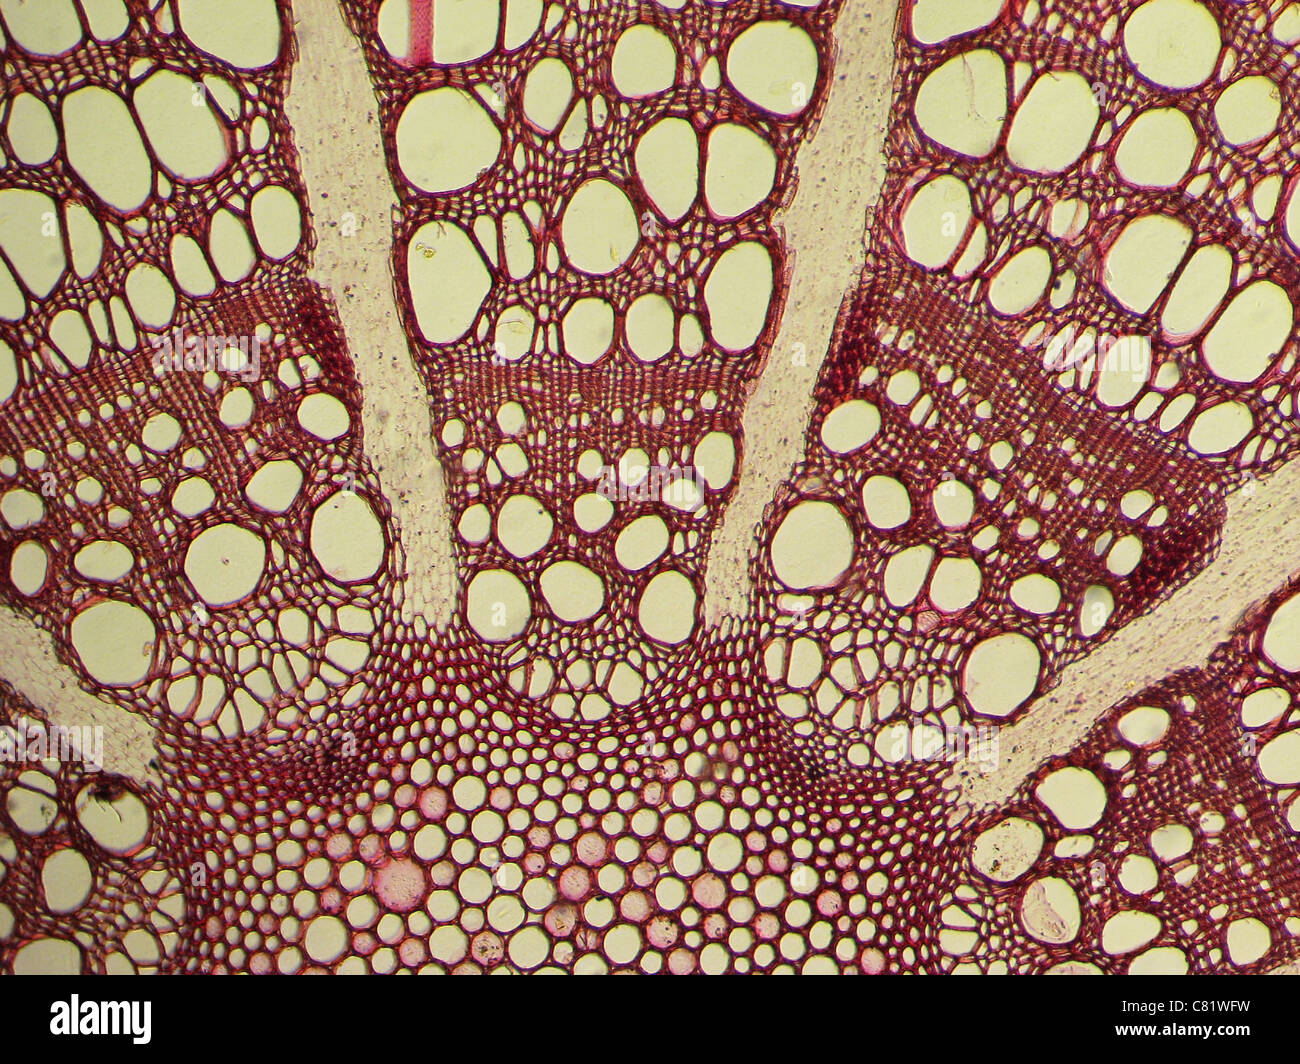 Abb. von gefärbten Clematis stammen Querschnitt durch ein Mikroskop genommen Stockfoto